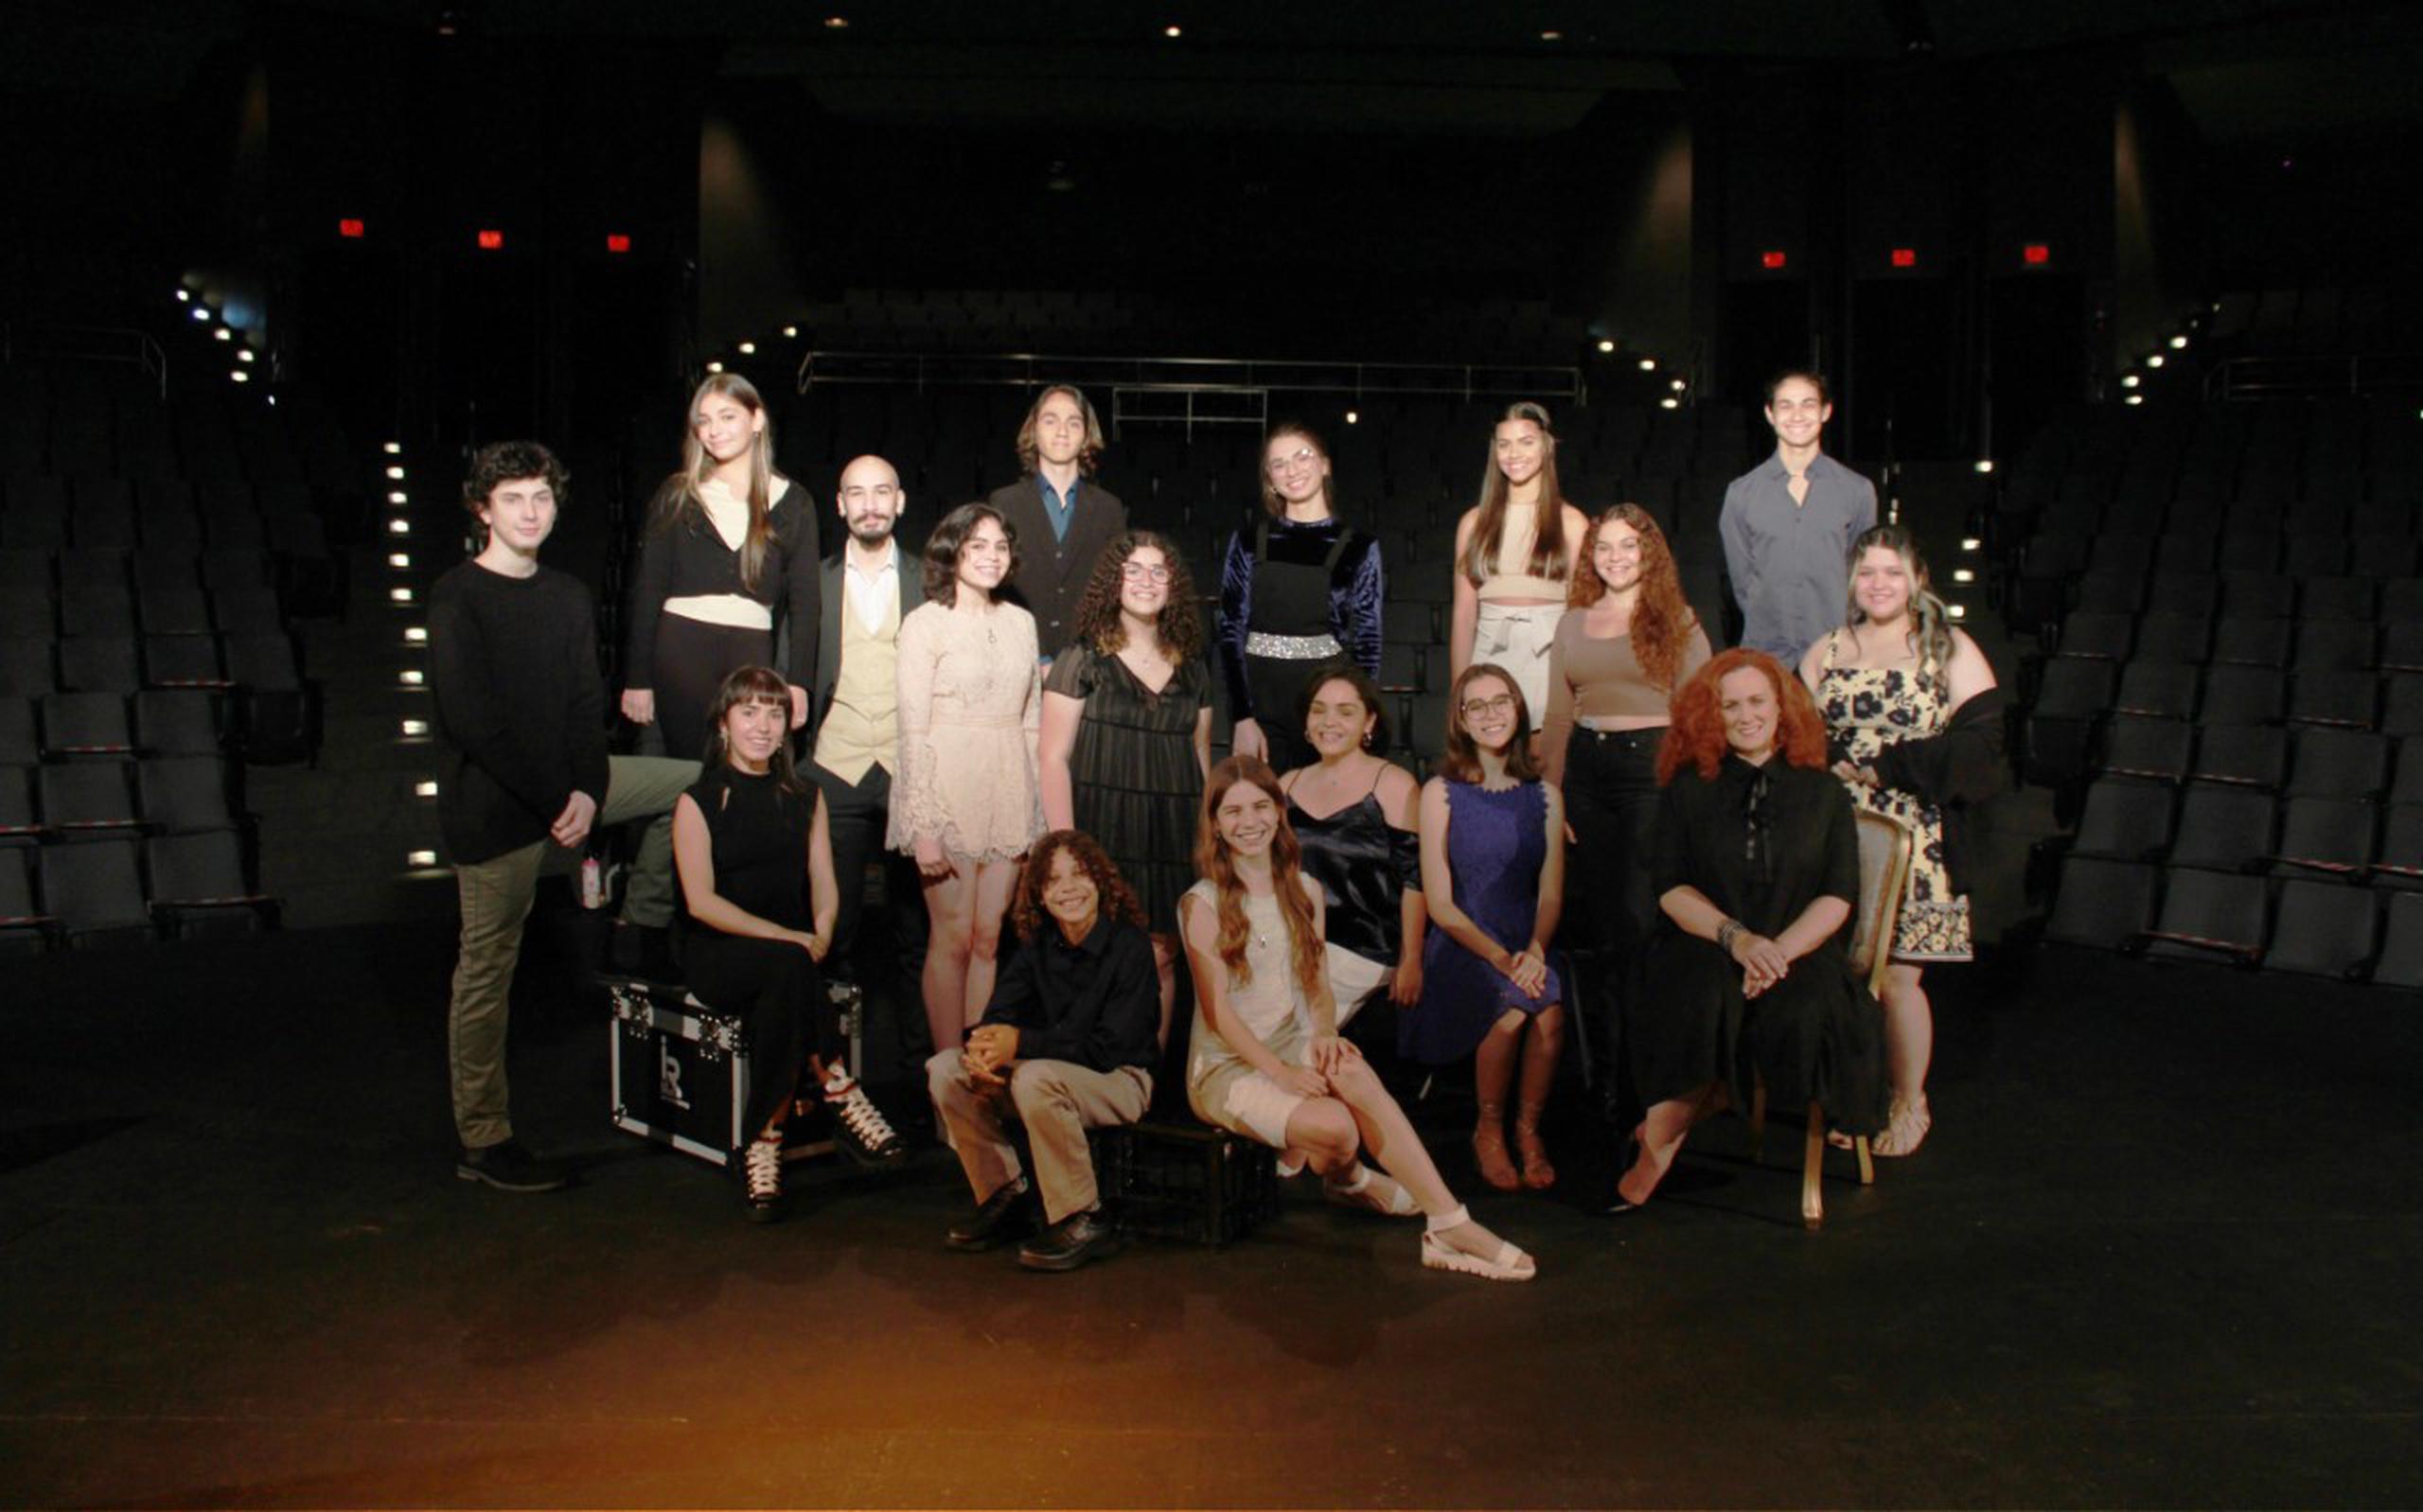 Elenco de la obra "Little Women", el cual incluye estudiantes y egresados de CeDin, así como a la cantante Michelle Brava.